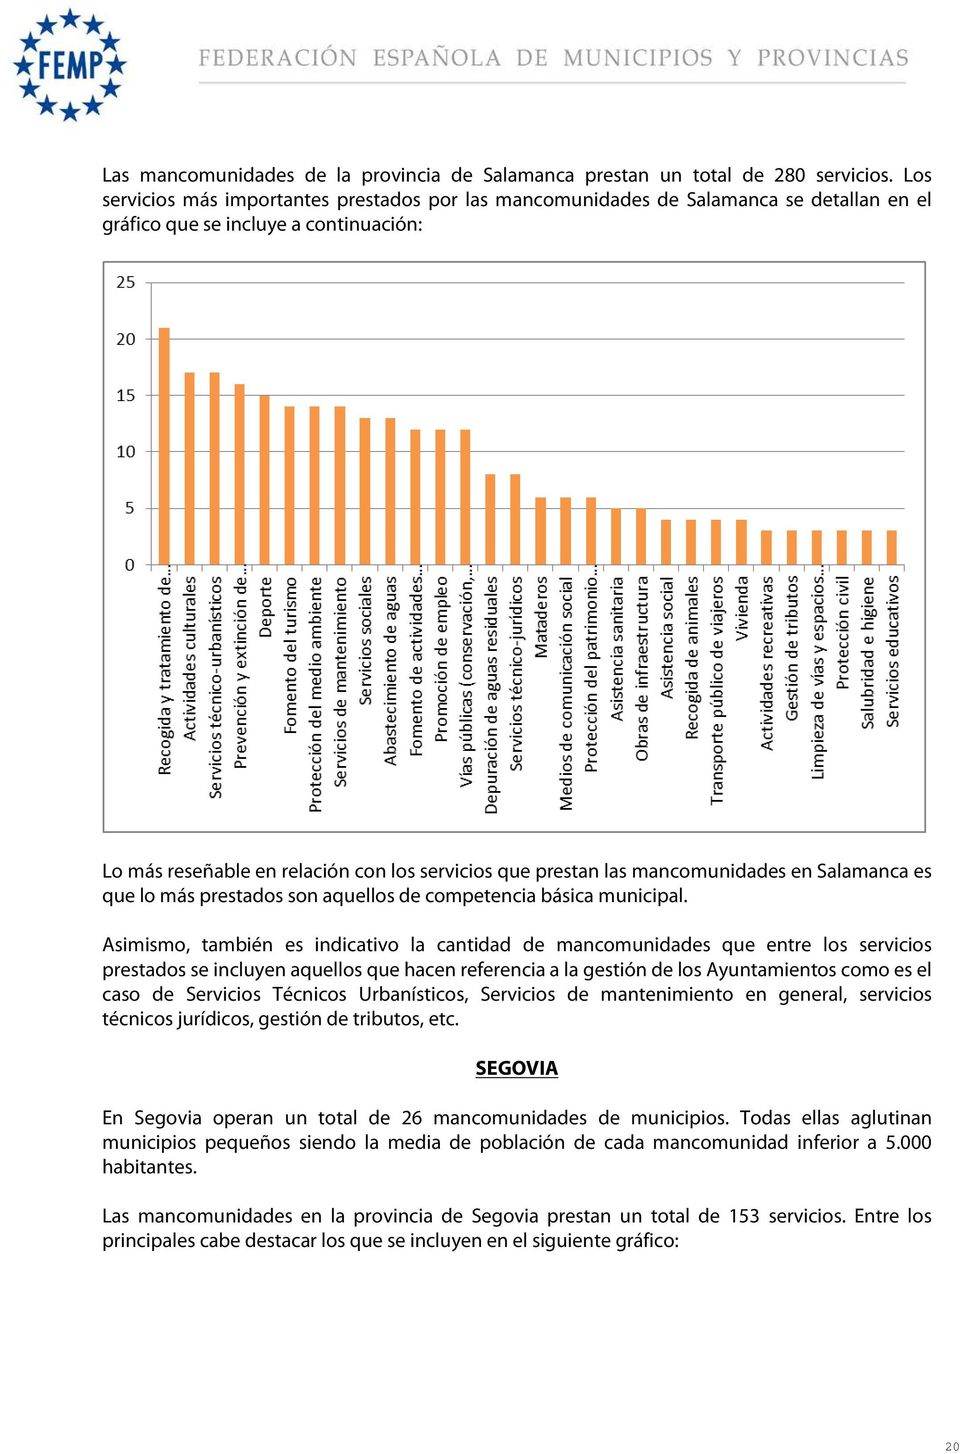 mancomunidades en Salamanca es que lo más prestados son aquellos de competencia básica municipal.